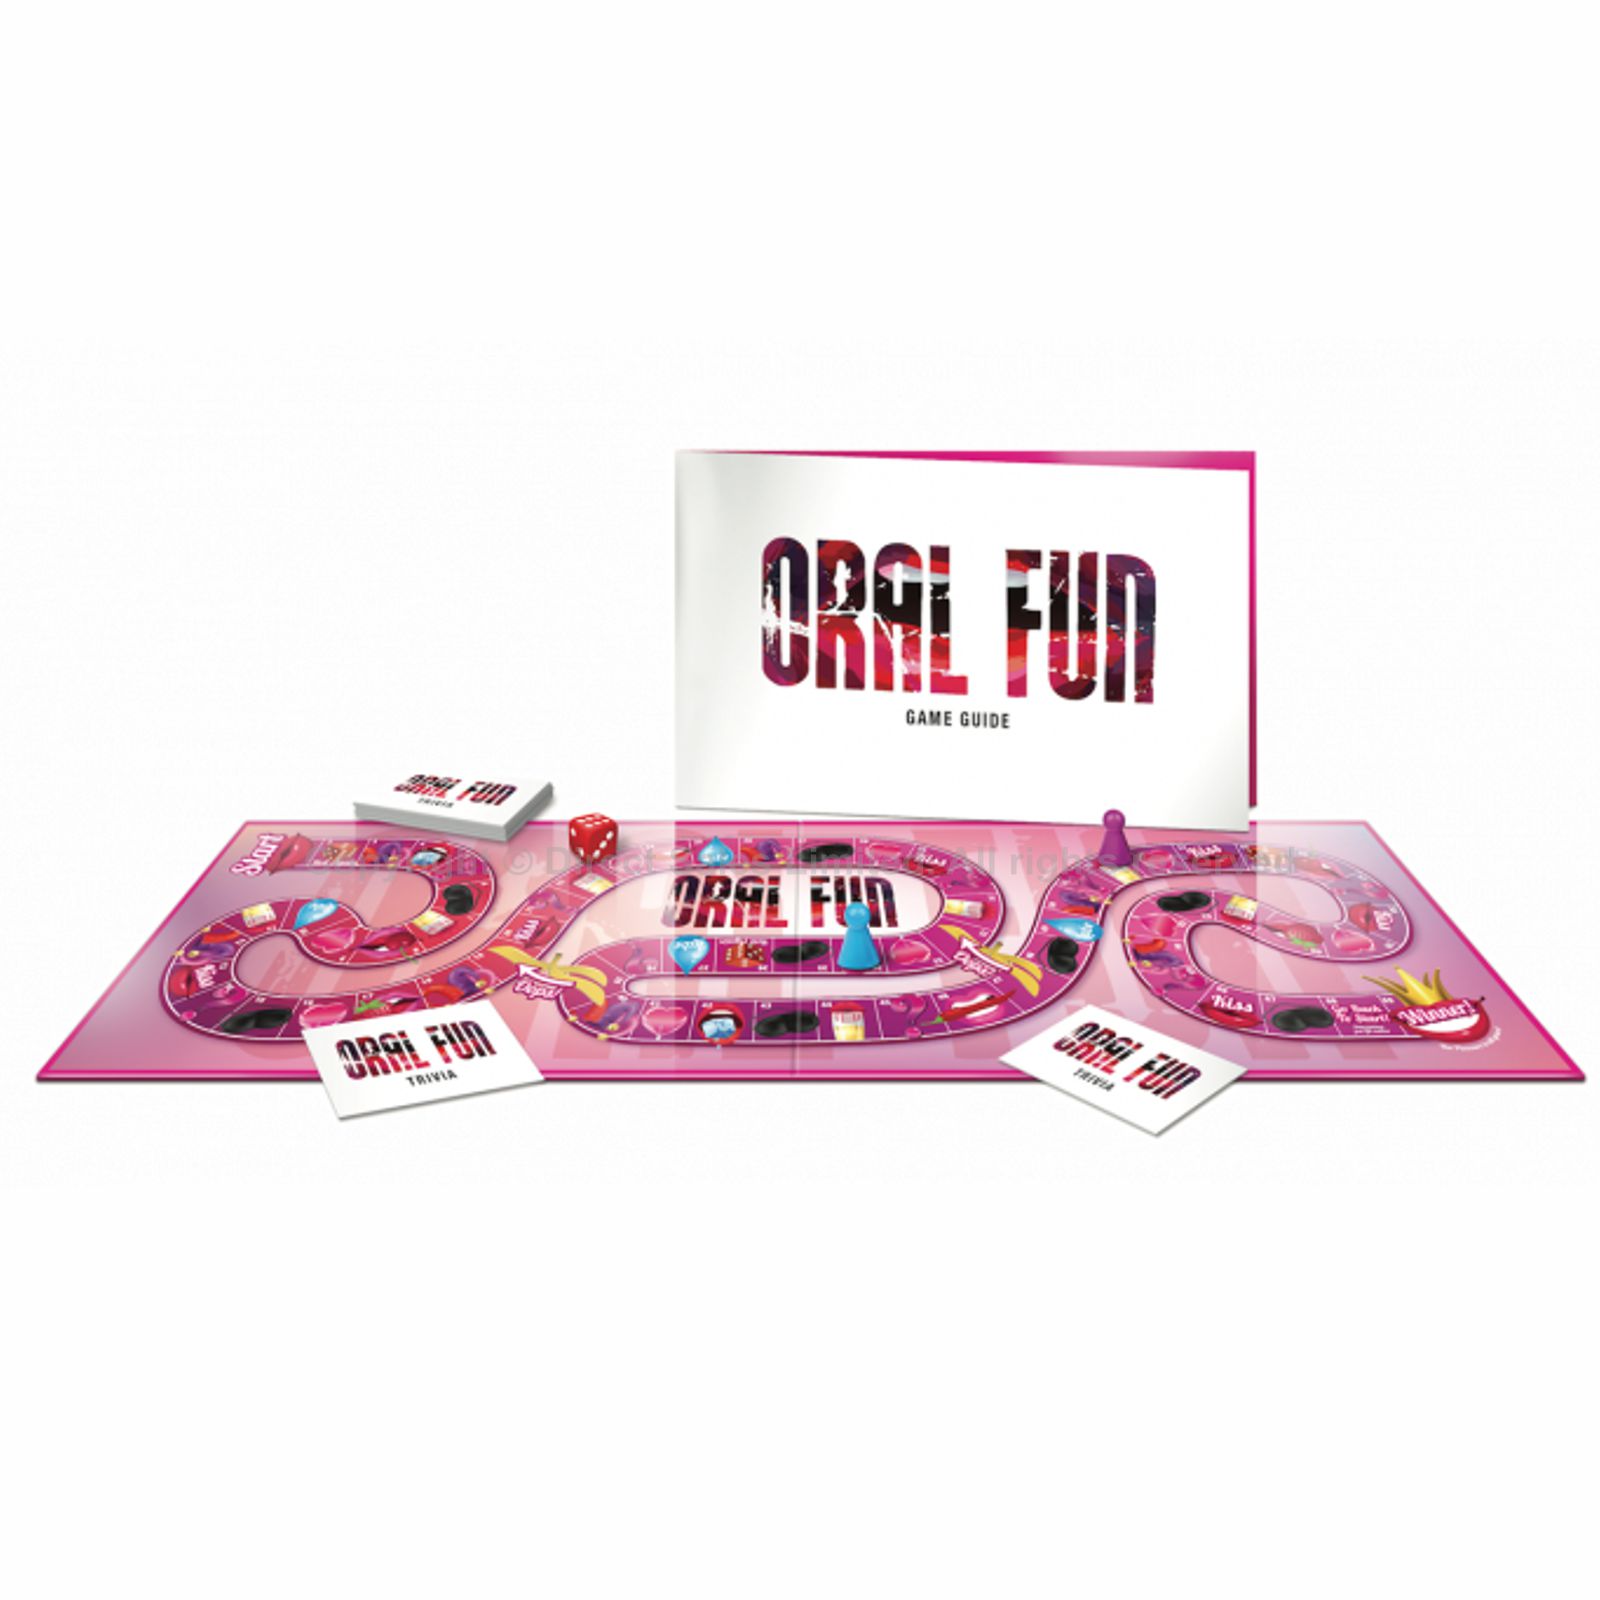 Oral Fun Game Or Fetish Fun Game Naughty Adult Fun Board Games For